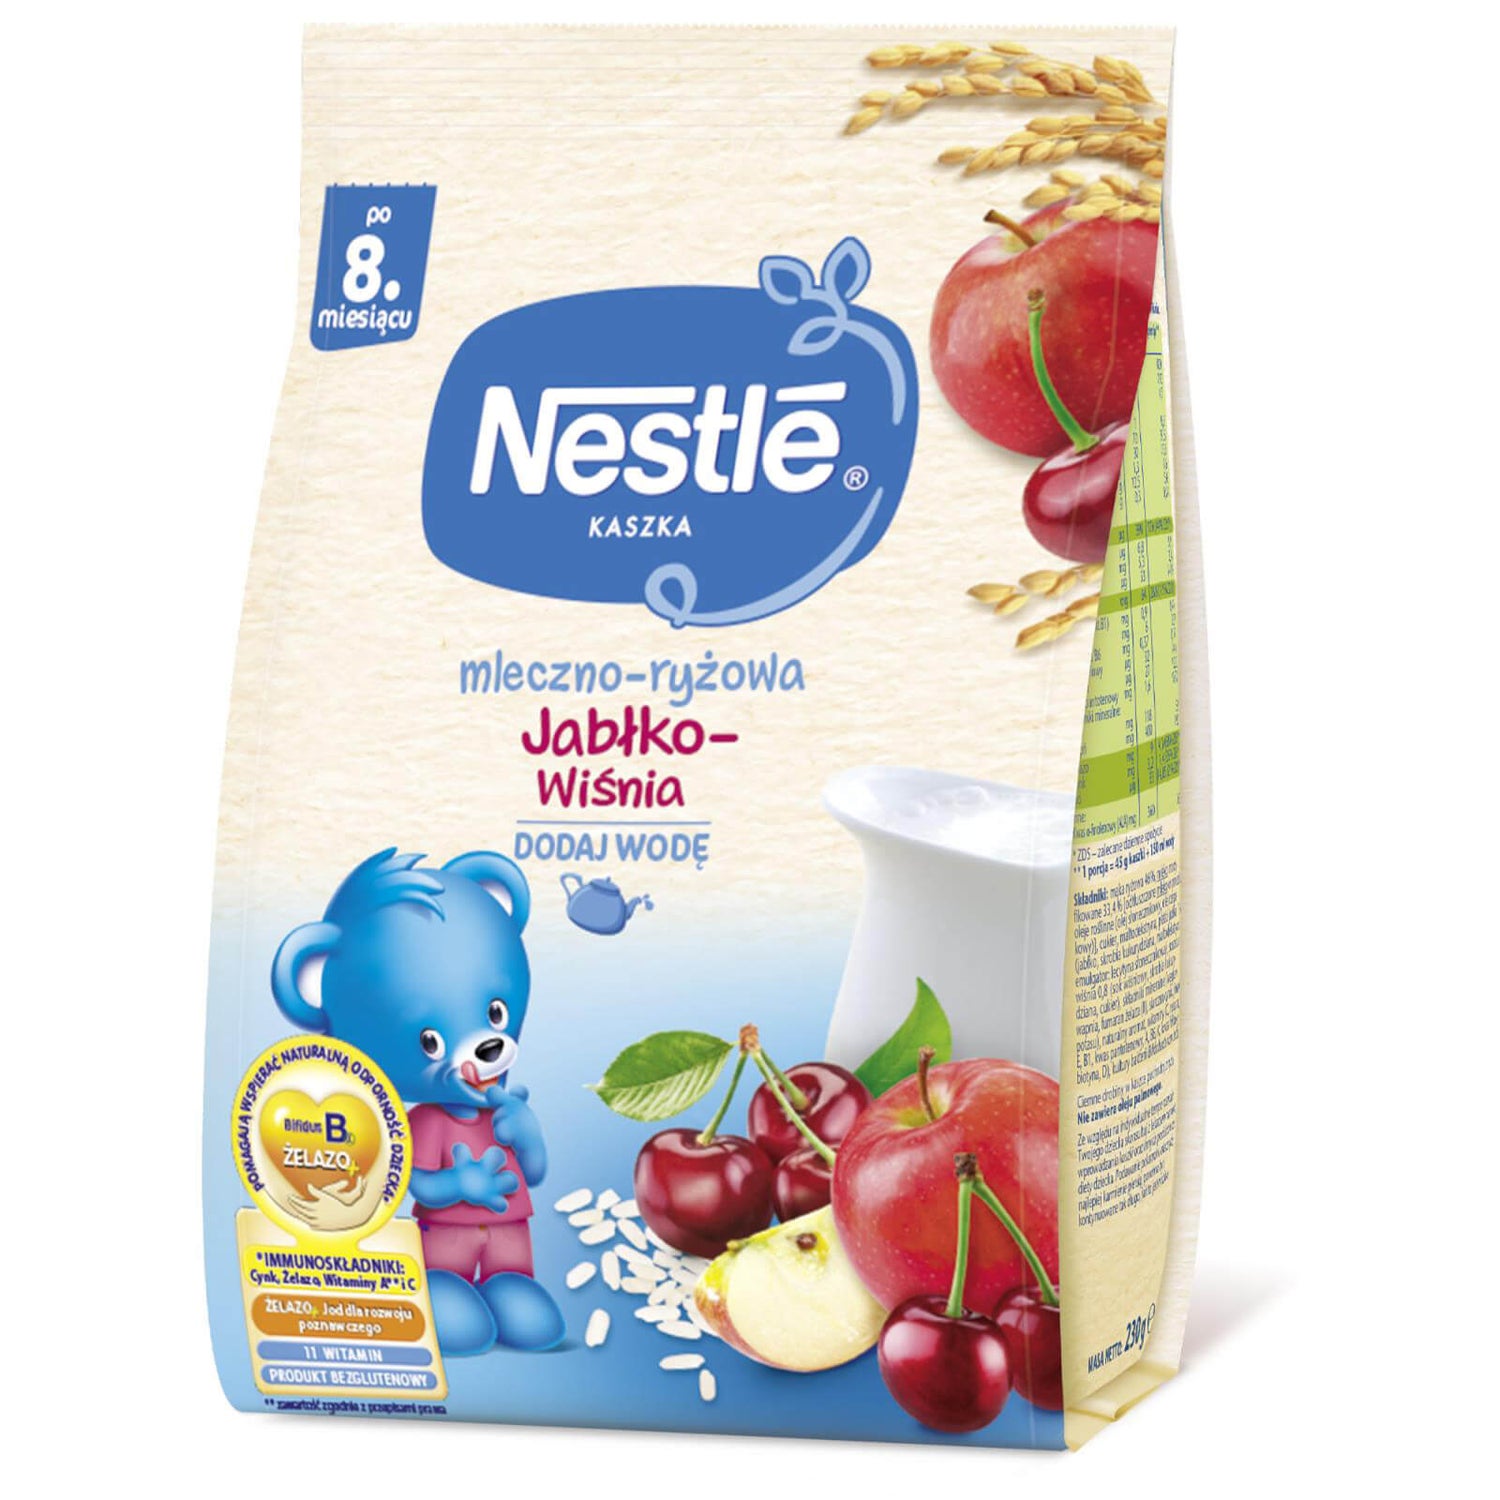 Nestlé Kaszka mleczno-ryżowa Jabłko Wiśnia - 230g